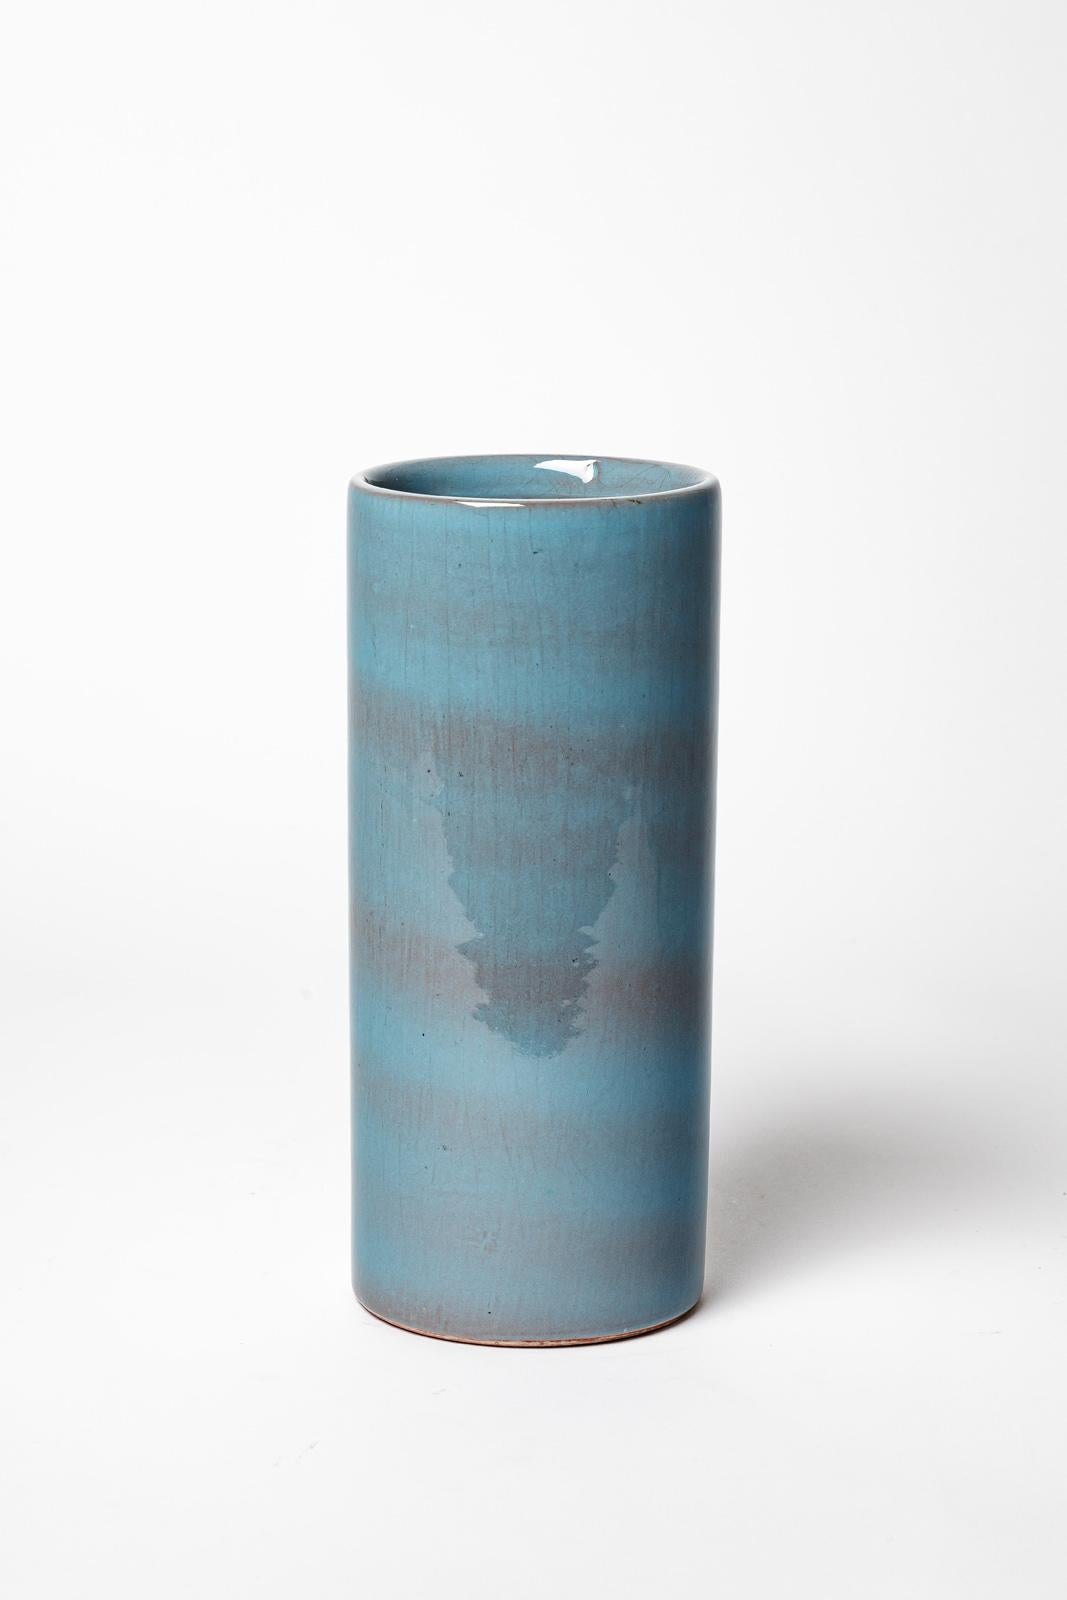 Antonio Lampecco

Blaue Zylindervase aus Keramik von belgischem Künstler

CIRCA 1980

Originaler, einwandfreier Zustand

Höhe 22 cm
Groß 10 cm
